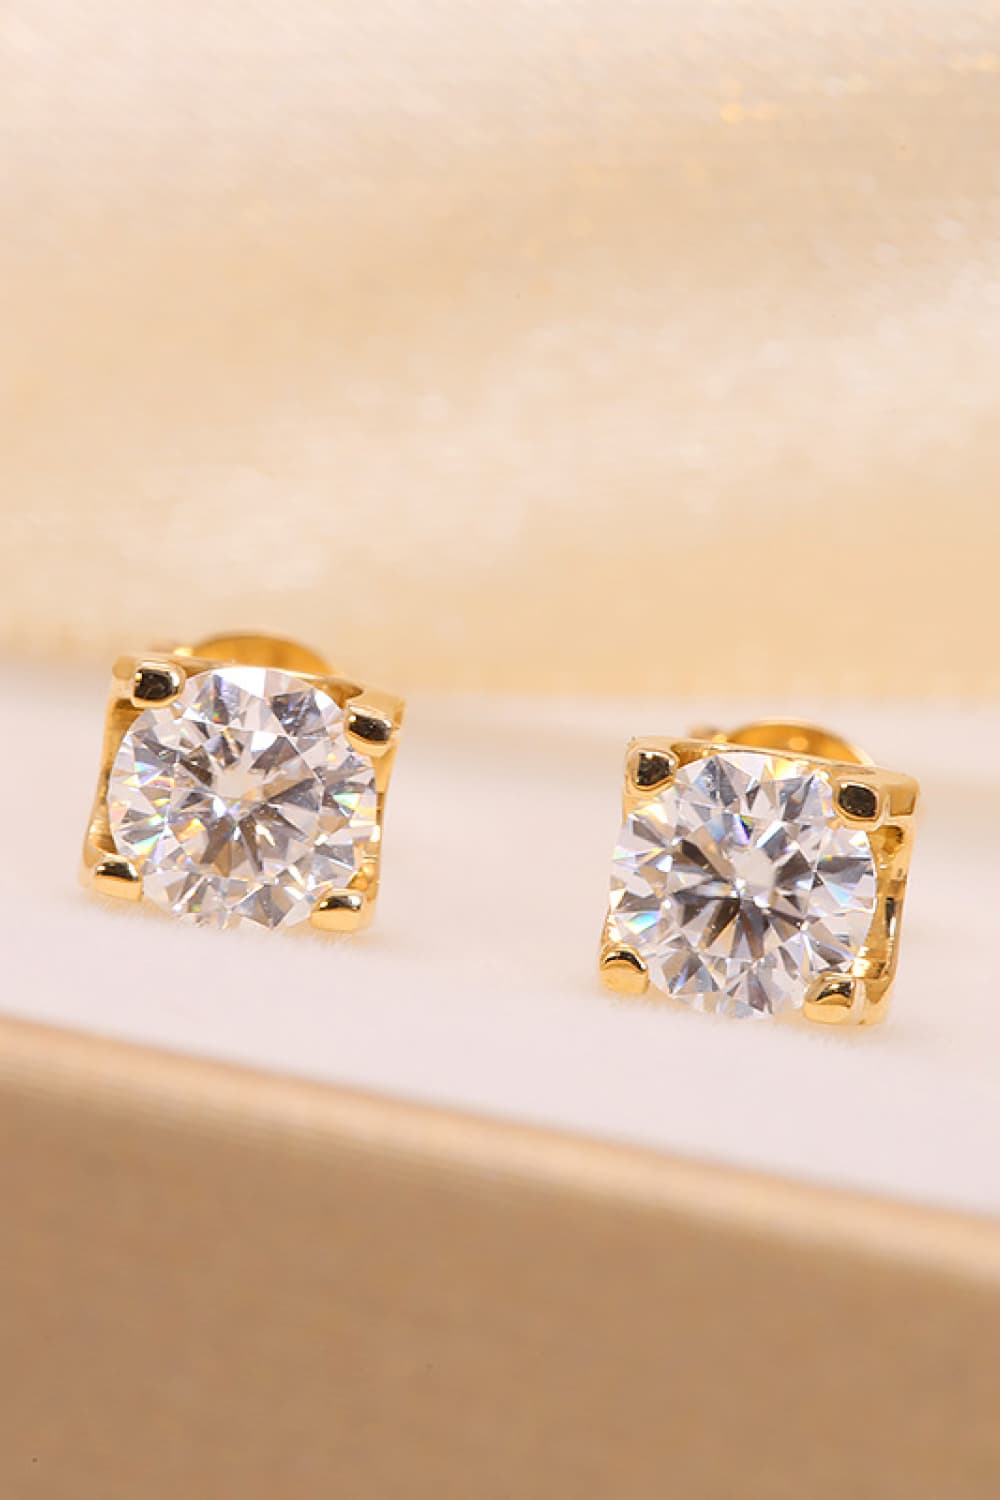 1 Carat Lab-Grown Diamond 18K Gold Stud Earrings BLUE ZONE PLANET